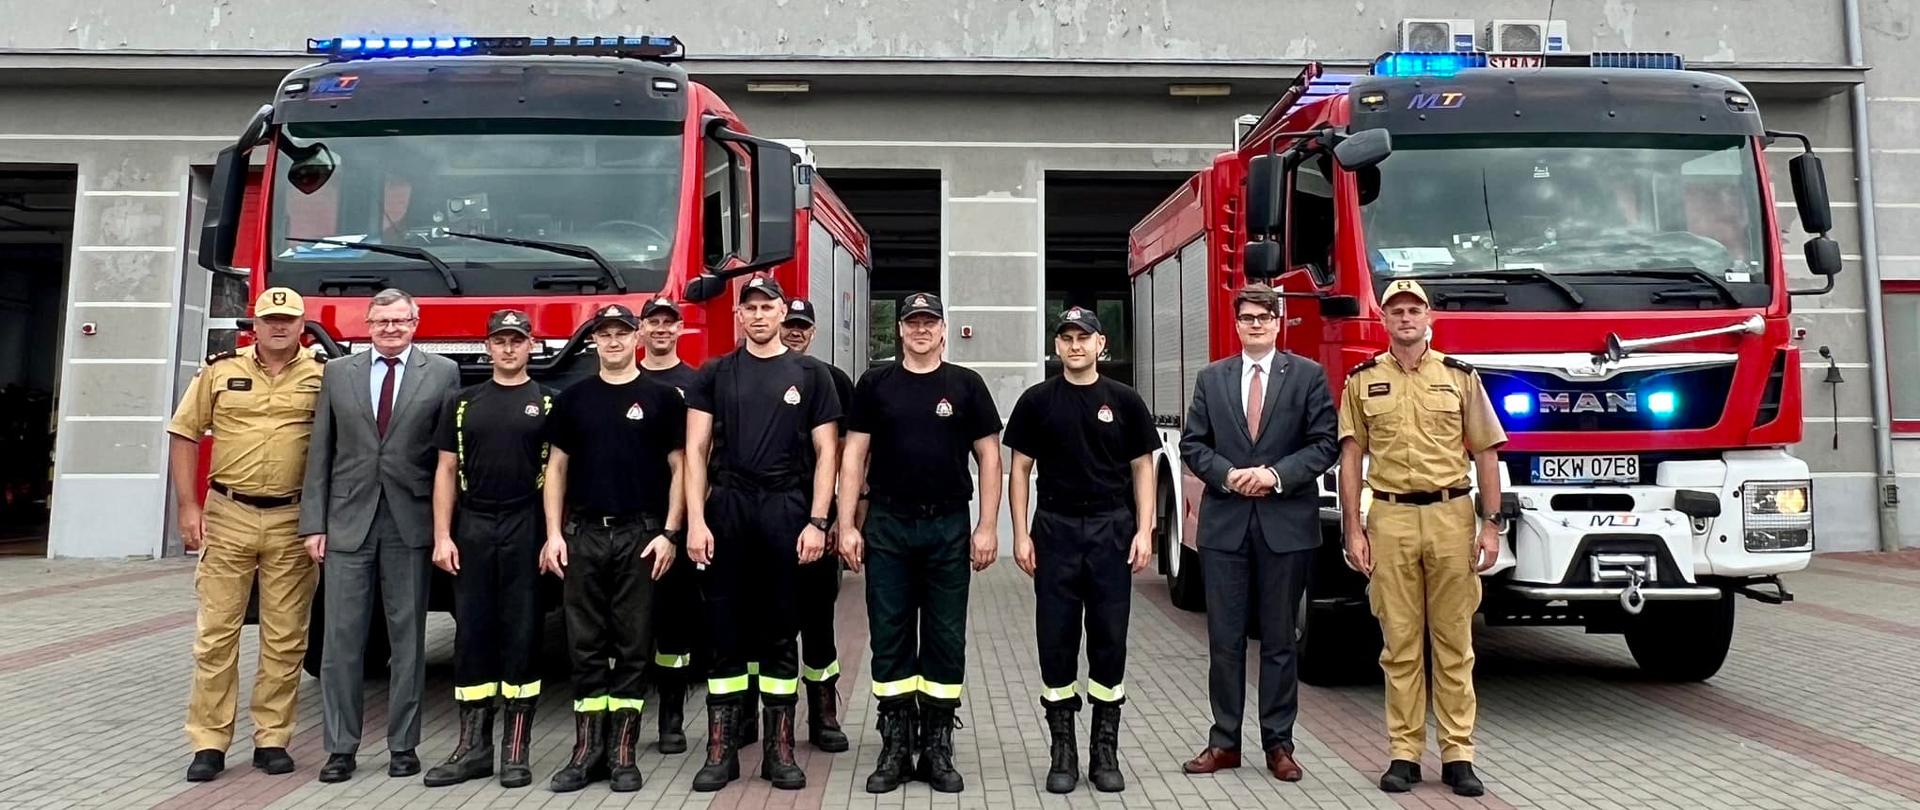 Komendanci i strażacy komendy PSP w Kwidzynie wraz z Wicewojewodą Pomorskim oraz Posłem na Sejm pozują do zdjęcia na tle samochodów pożarniczych.